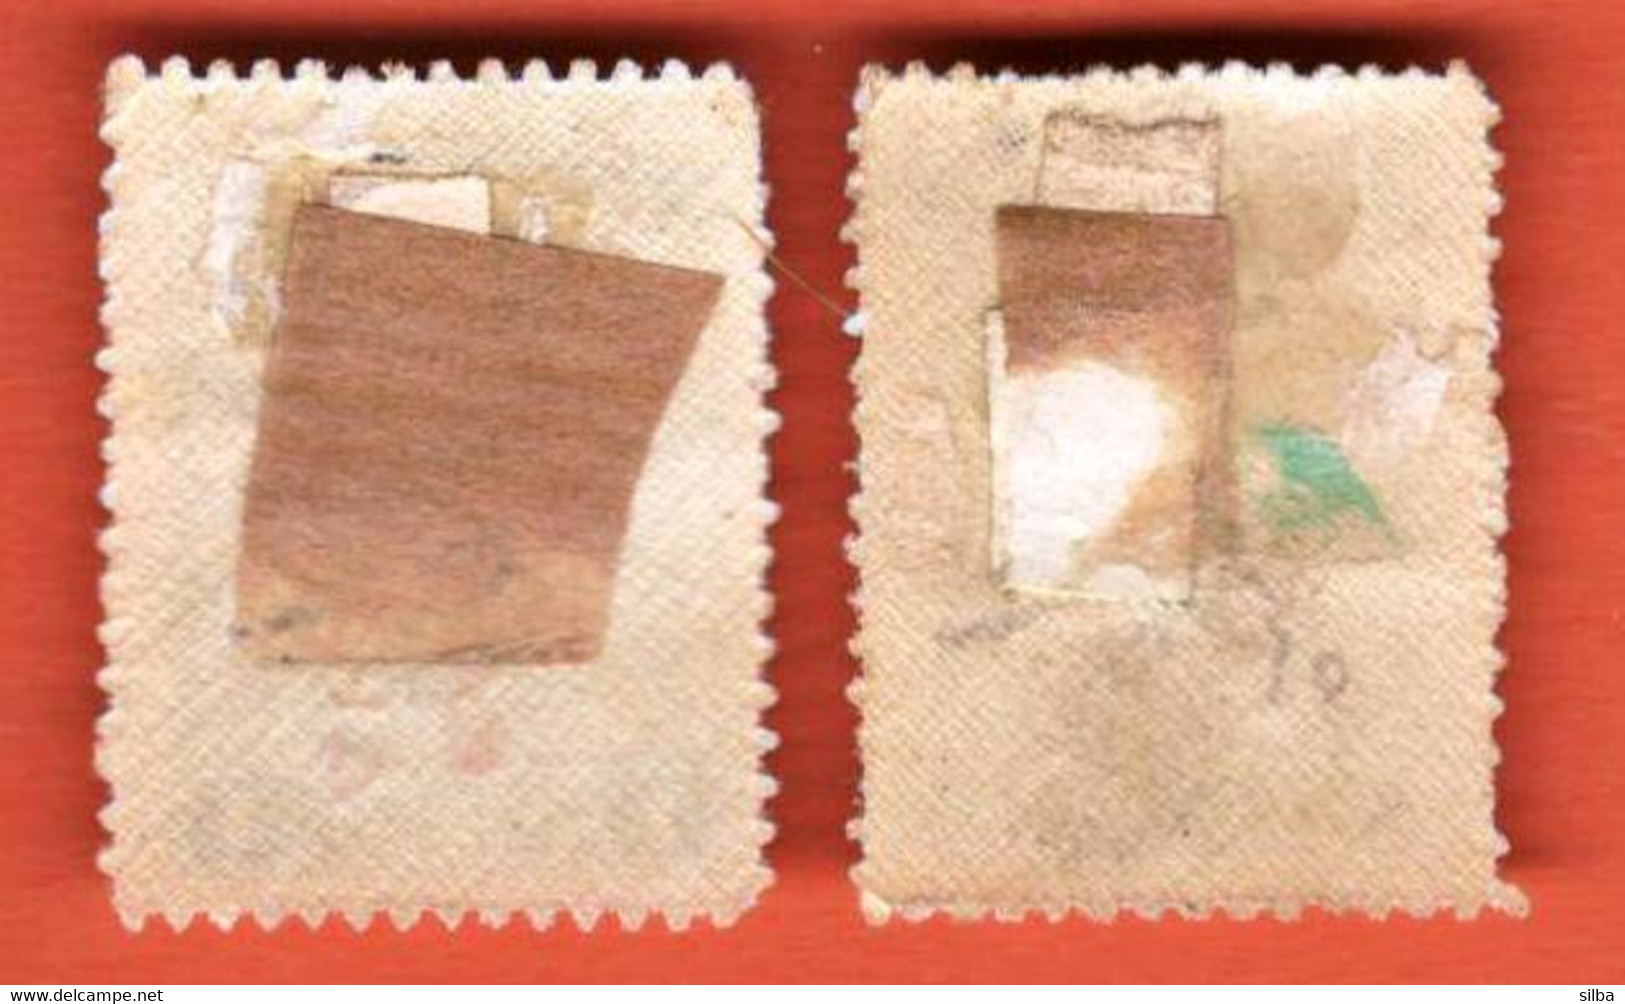 Greece Icaria Ikaria 1912 -1914 Greek Postage Stamps Of 1911-1924 Overprinted In Red Or Carmine 1, 5 Lepta / Falz - Ikarien